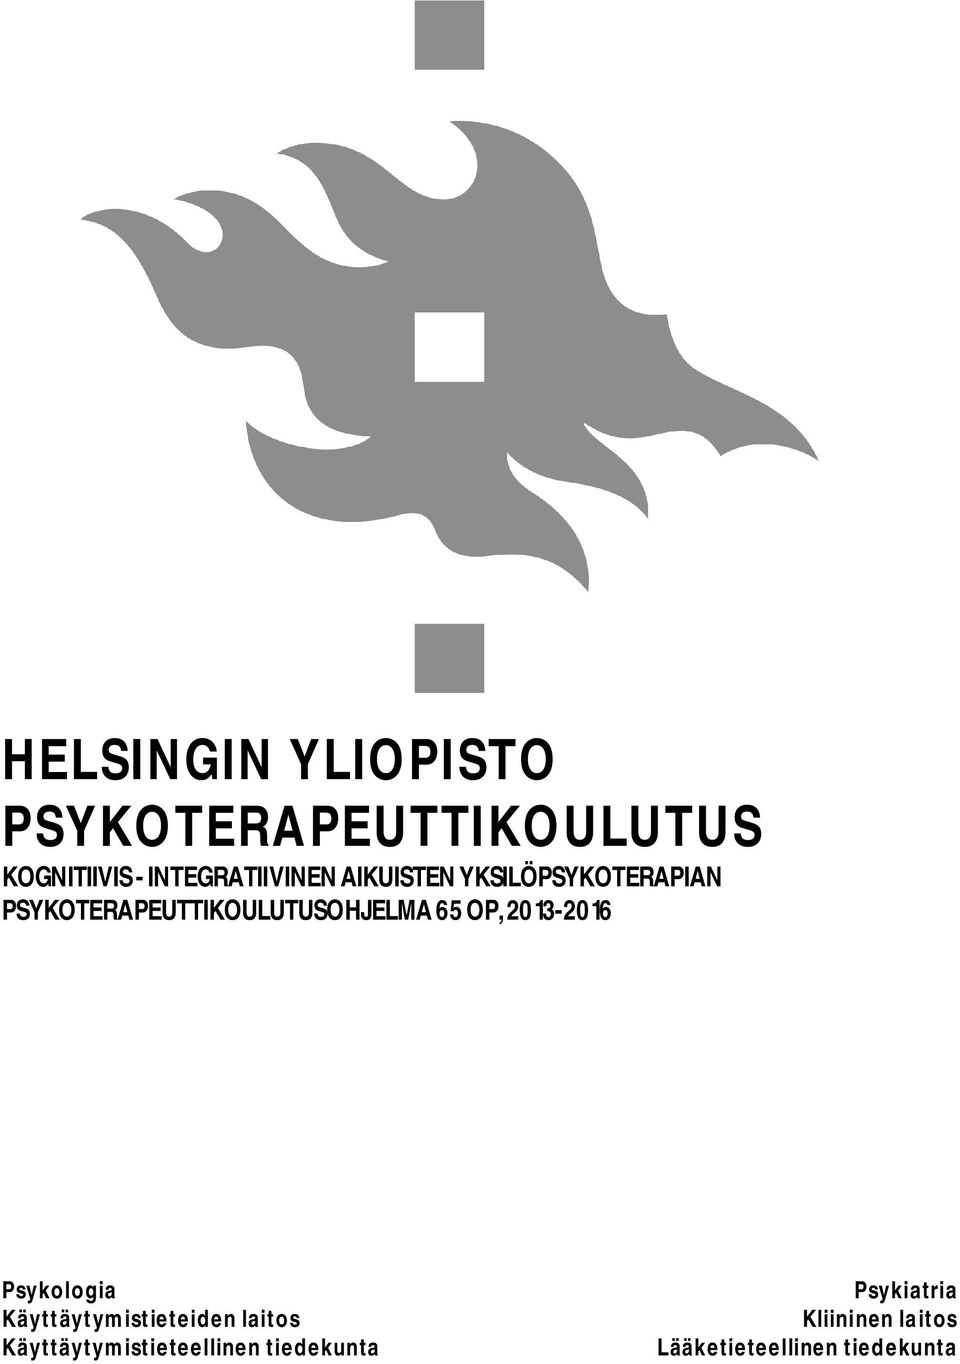 PSYKOTERAPEUTTIKOULUTUSOHJELMA 65 OP, 2013-2016 Psykologia